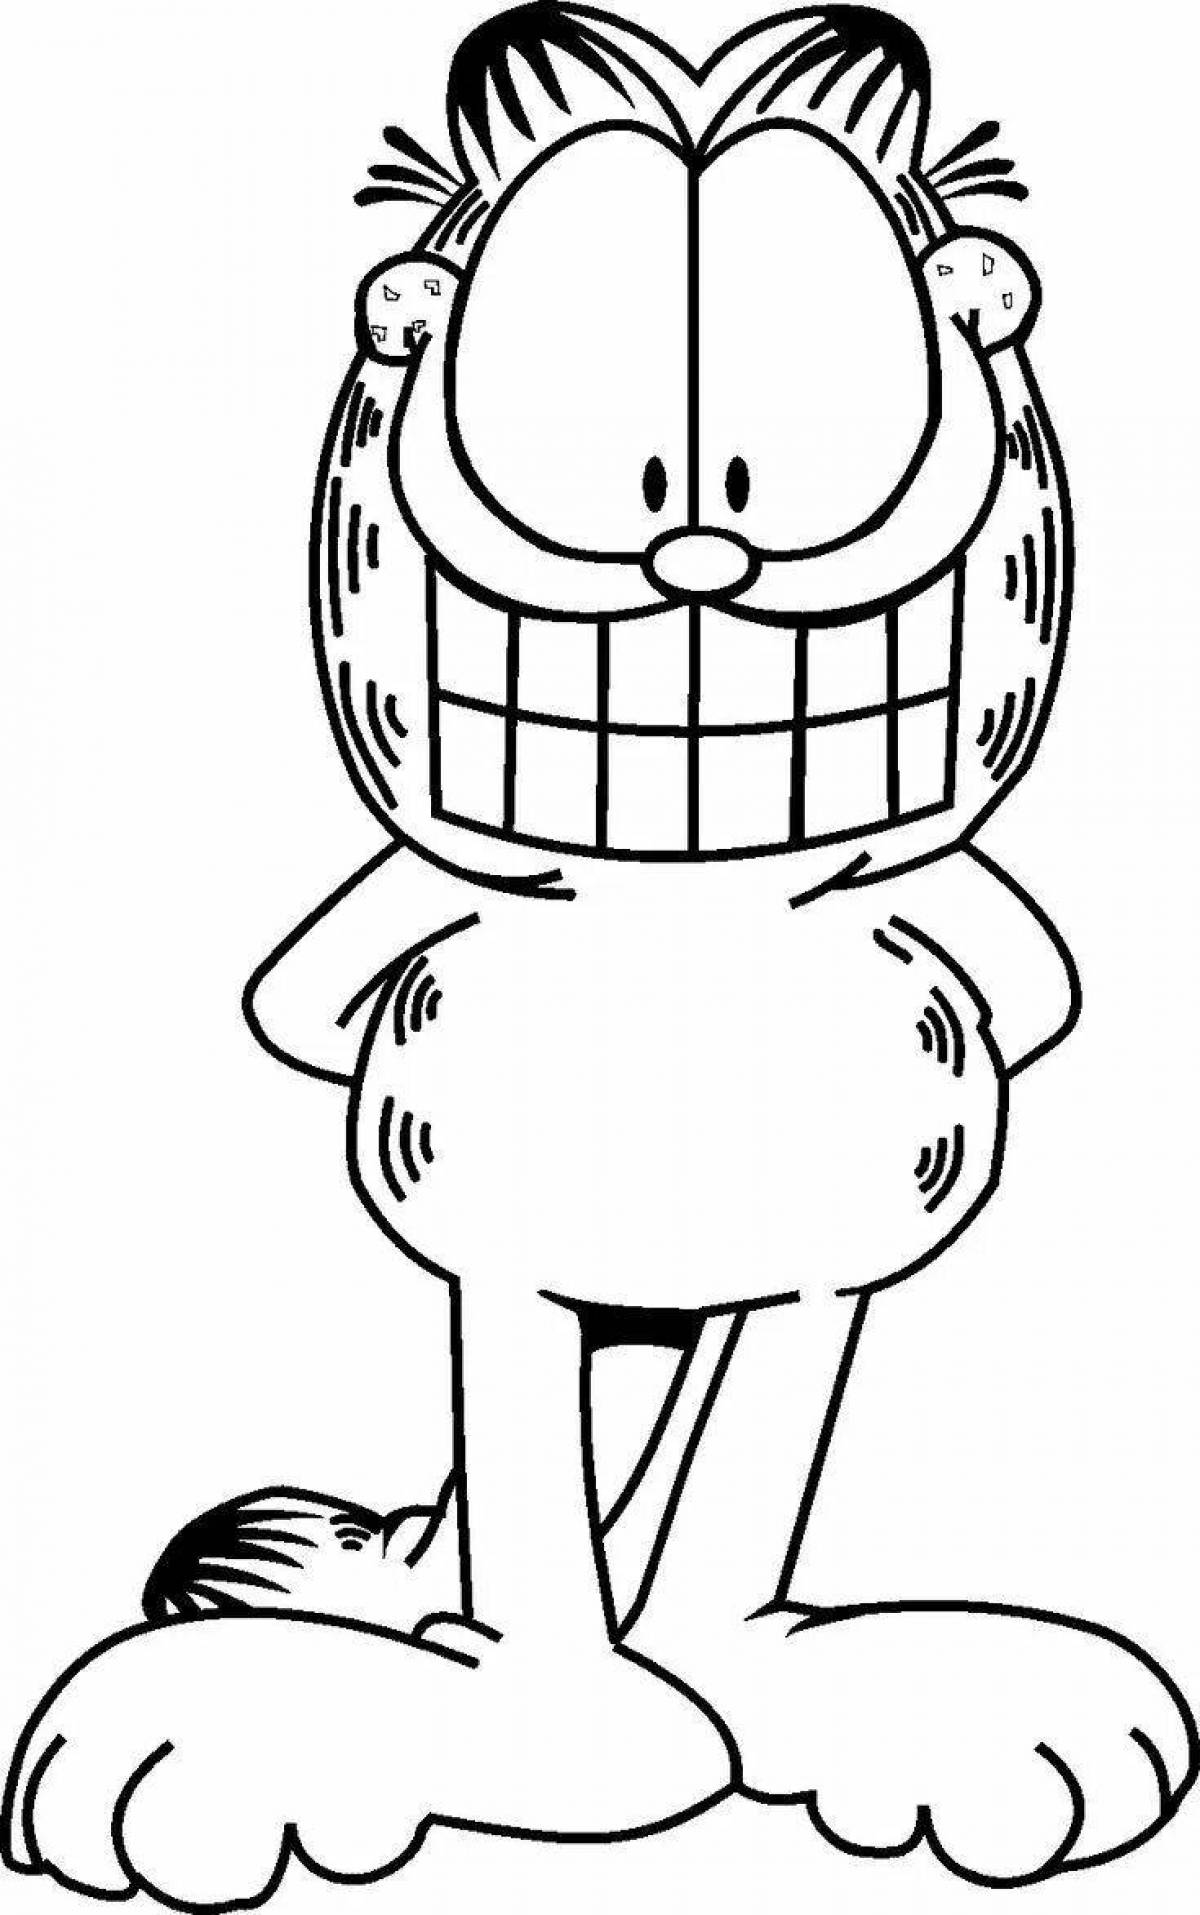 Garfield fun coloring book